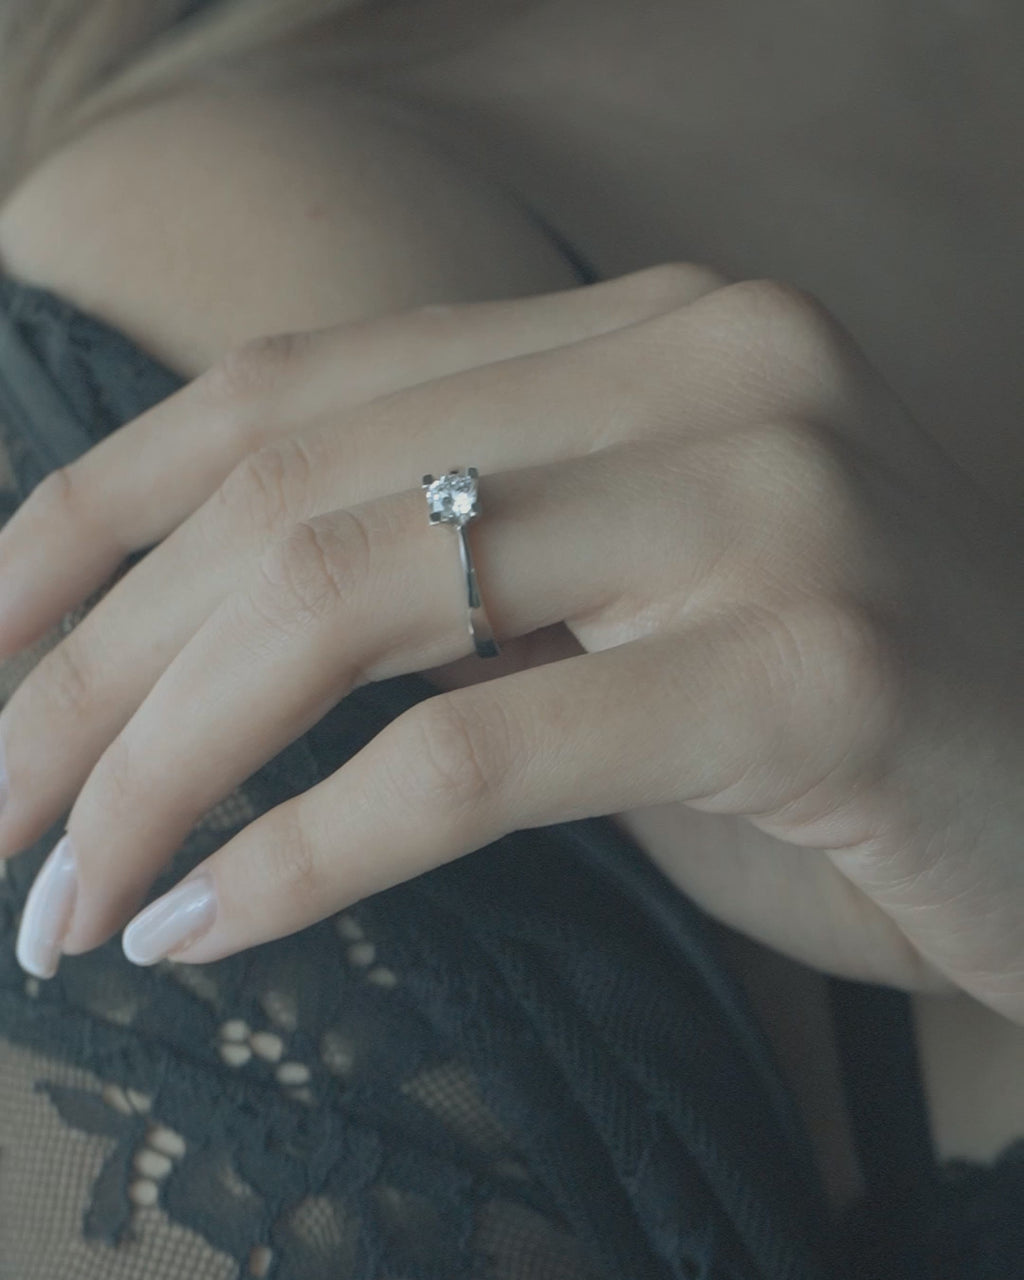 Λευκόχρυσο μονόπετρο με διαμάντι και καστόνι σχήματος V, φορεμένο σε γυναικείο χέρι.